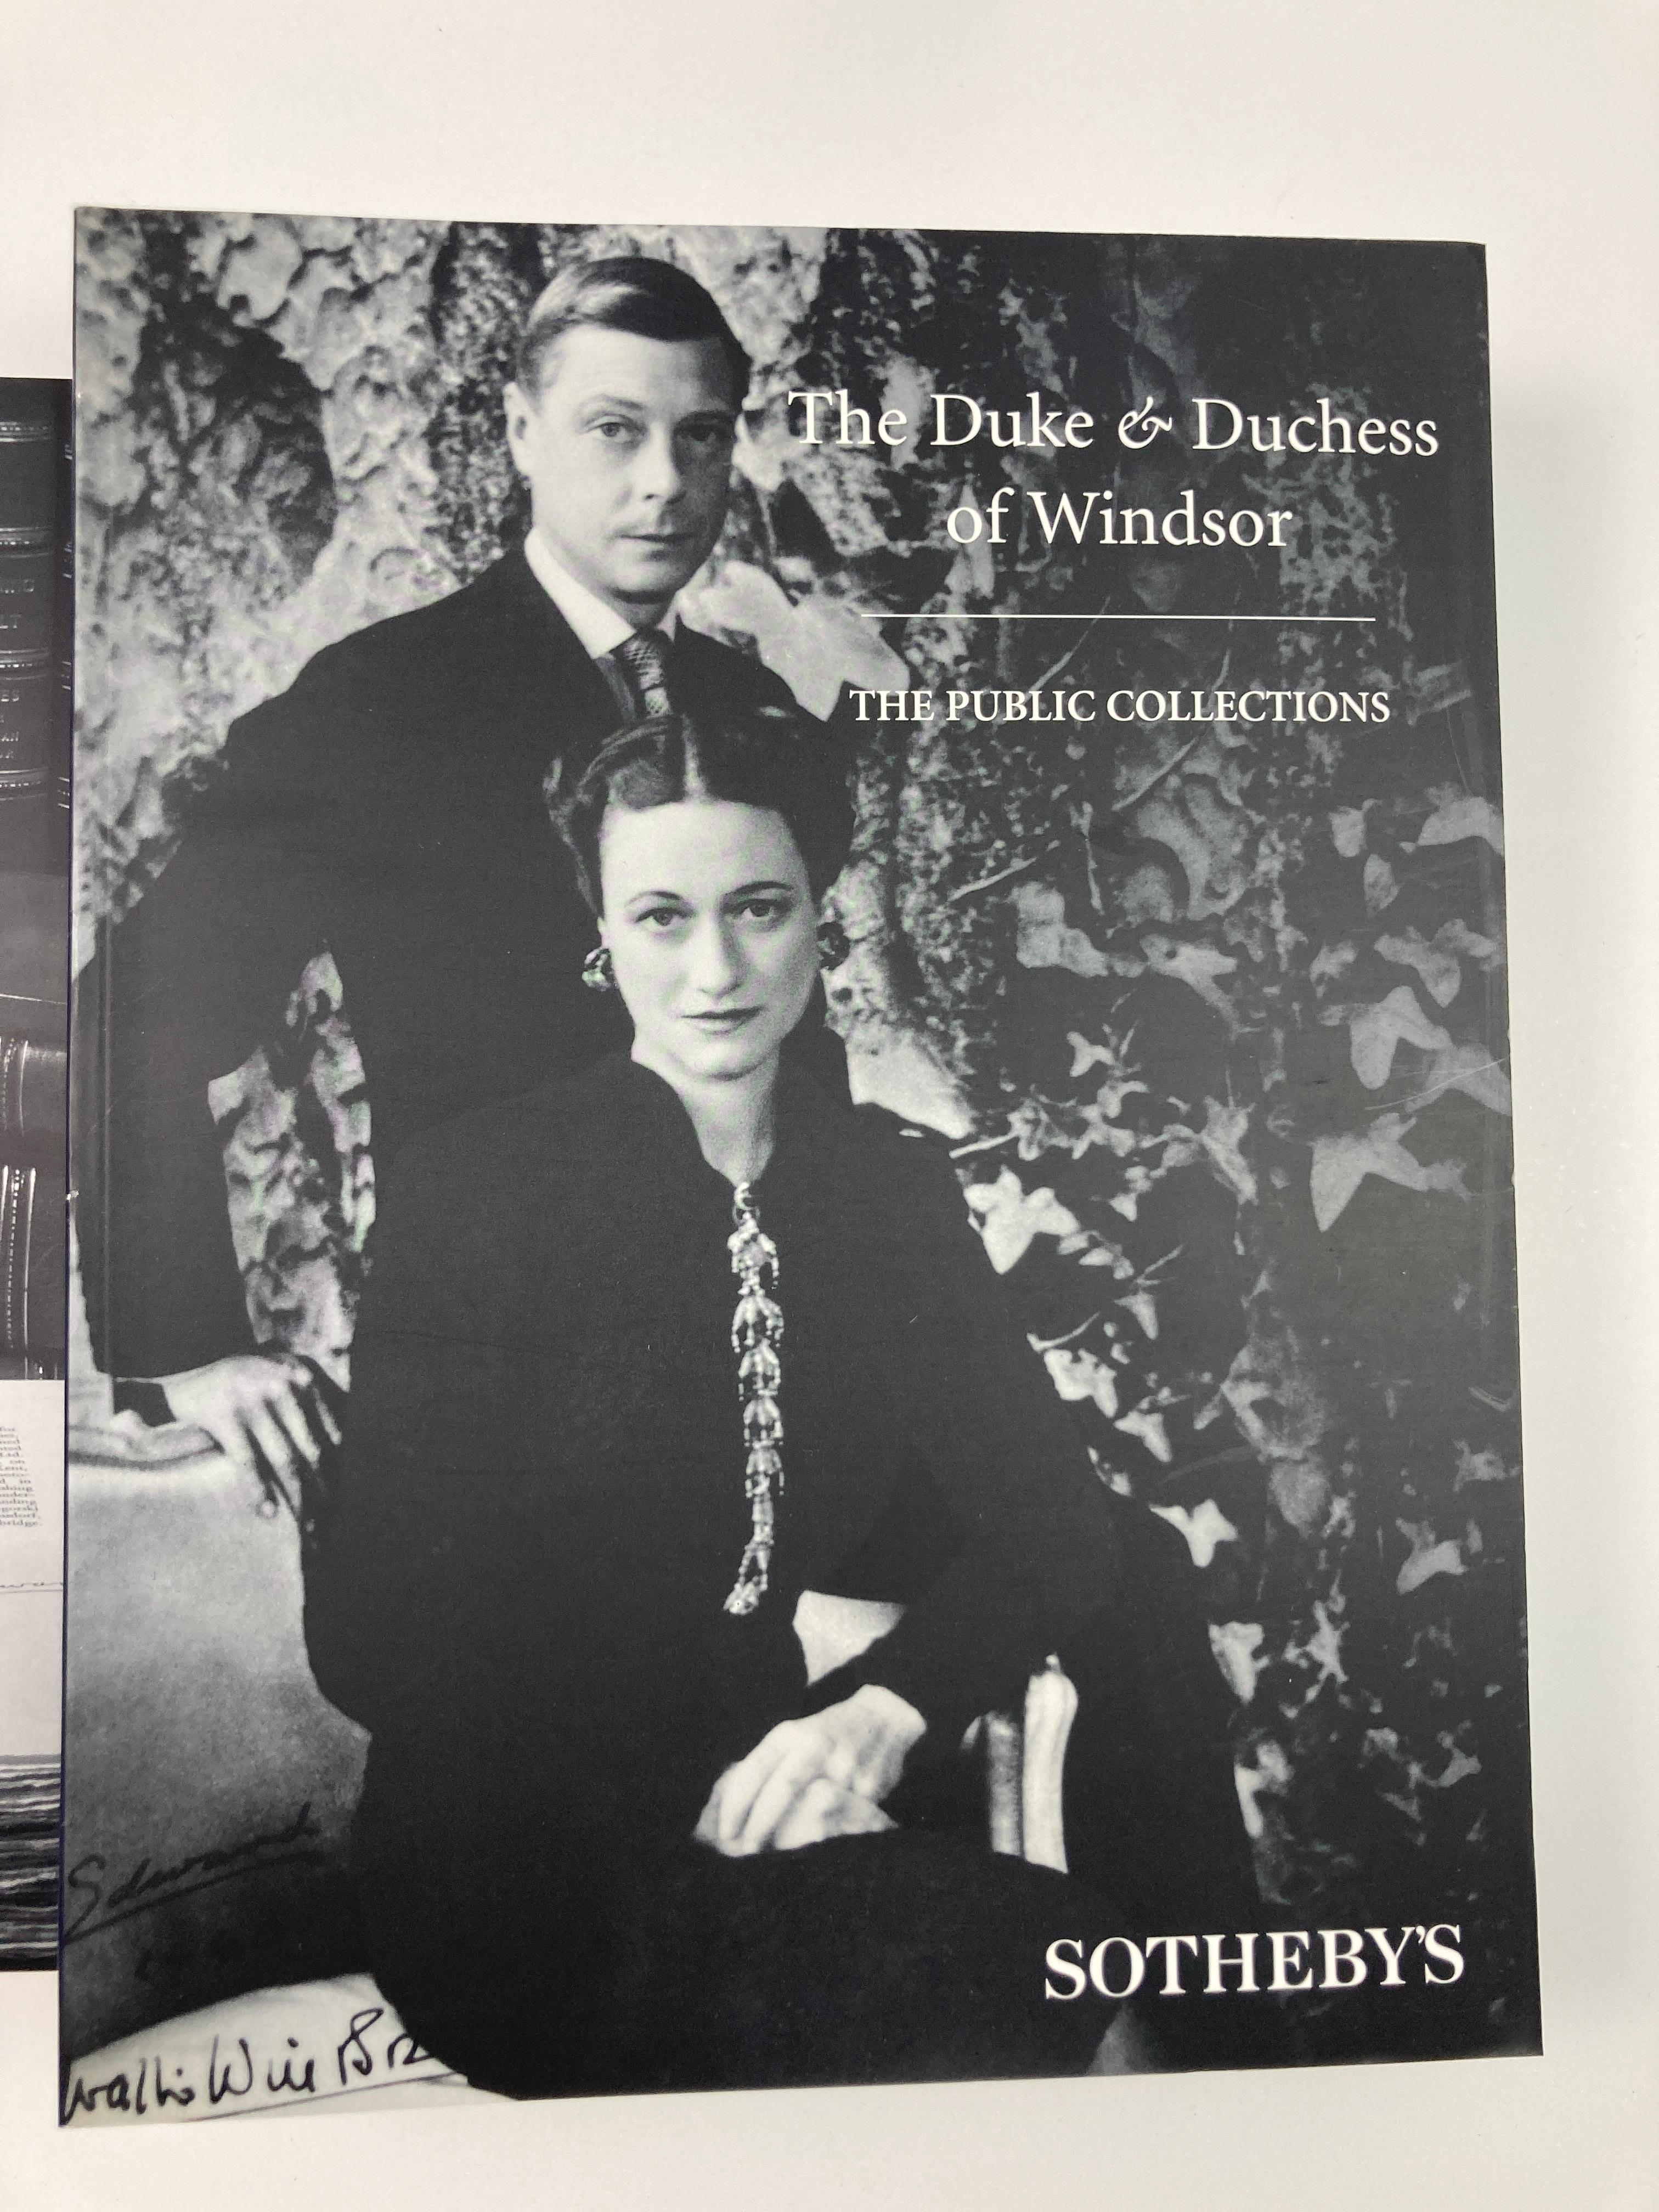 The Duke and Duchess of Windsor Auction Sotheby's Books Catalogs in Slipcase Box (Le duc et la duchesse de Windsor, ventes aux enchères, catalogues de livres de Sotheby's dans une boîte) en vente 6